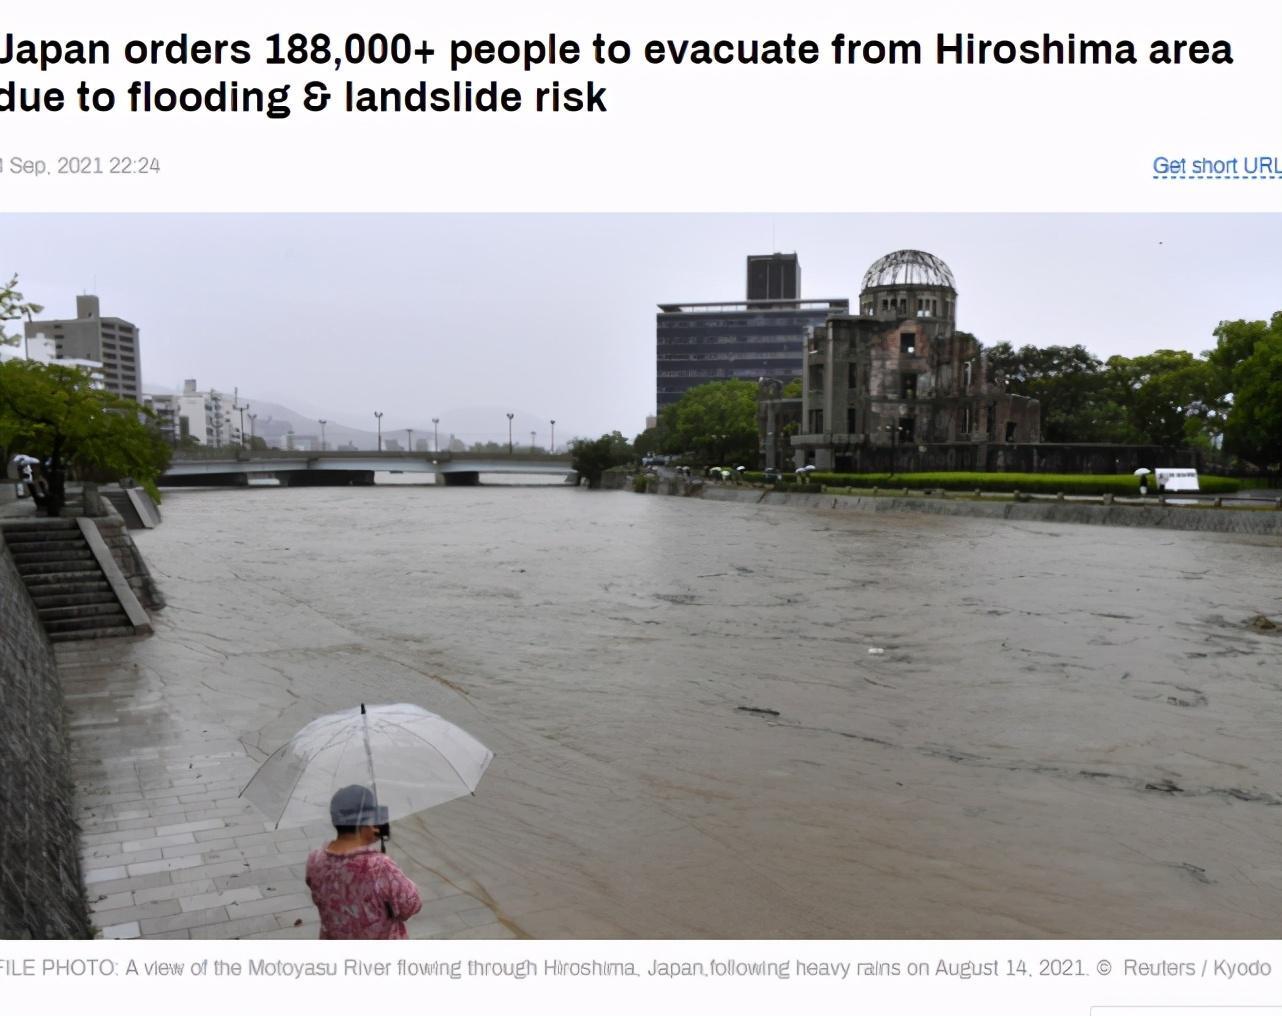 日本7.2万余人被命令撤离是怎么回事?